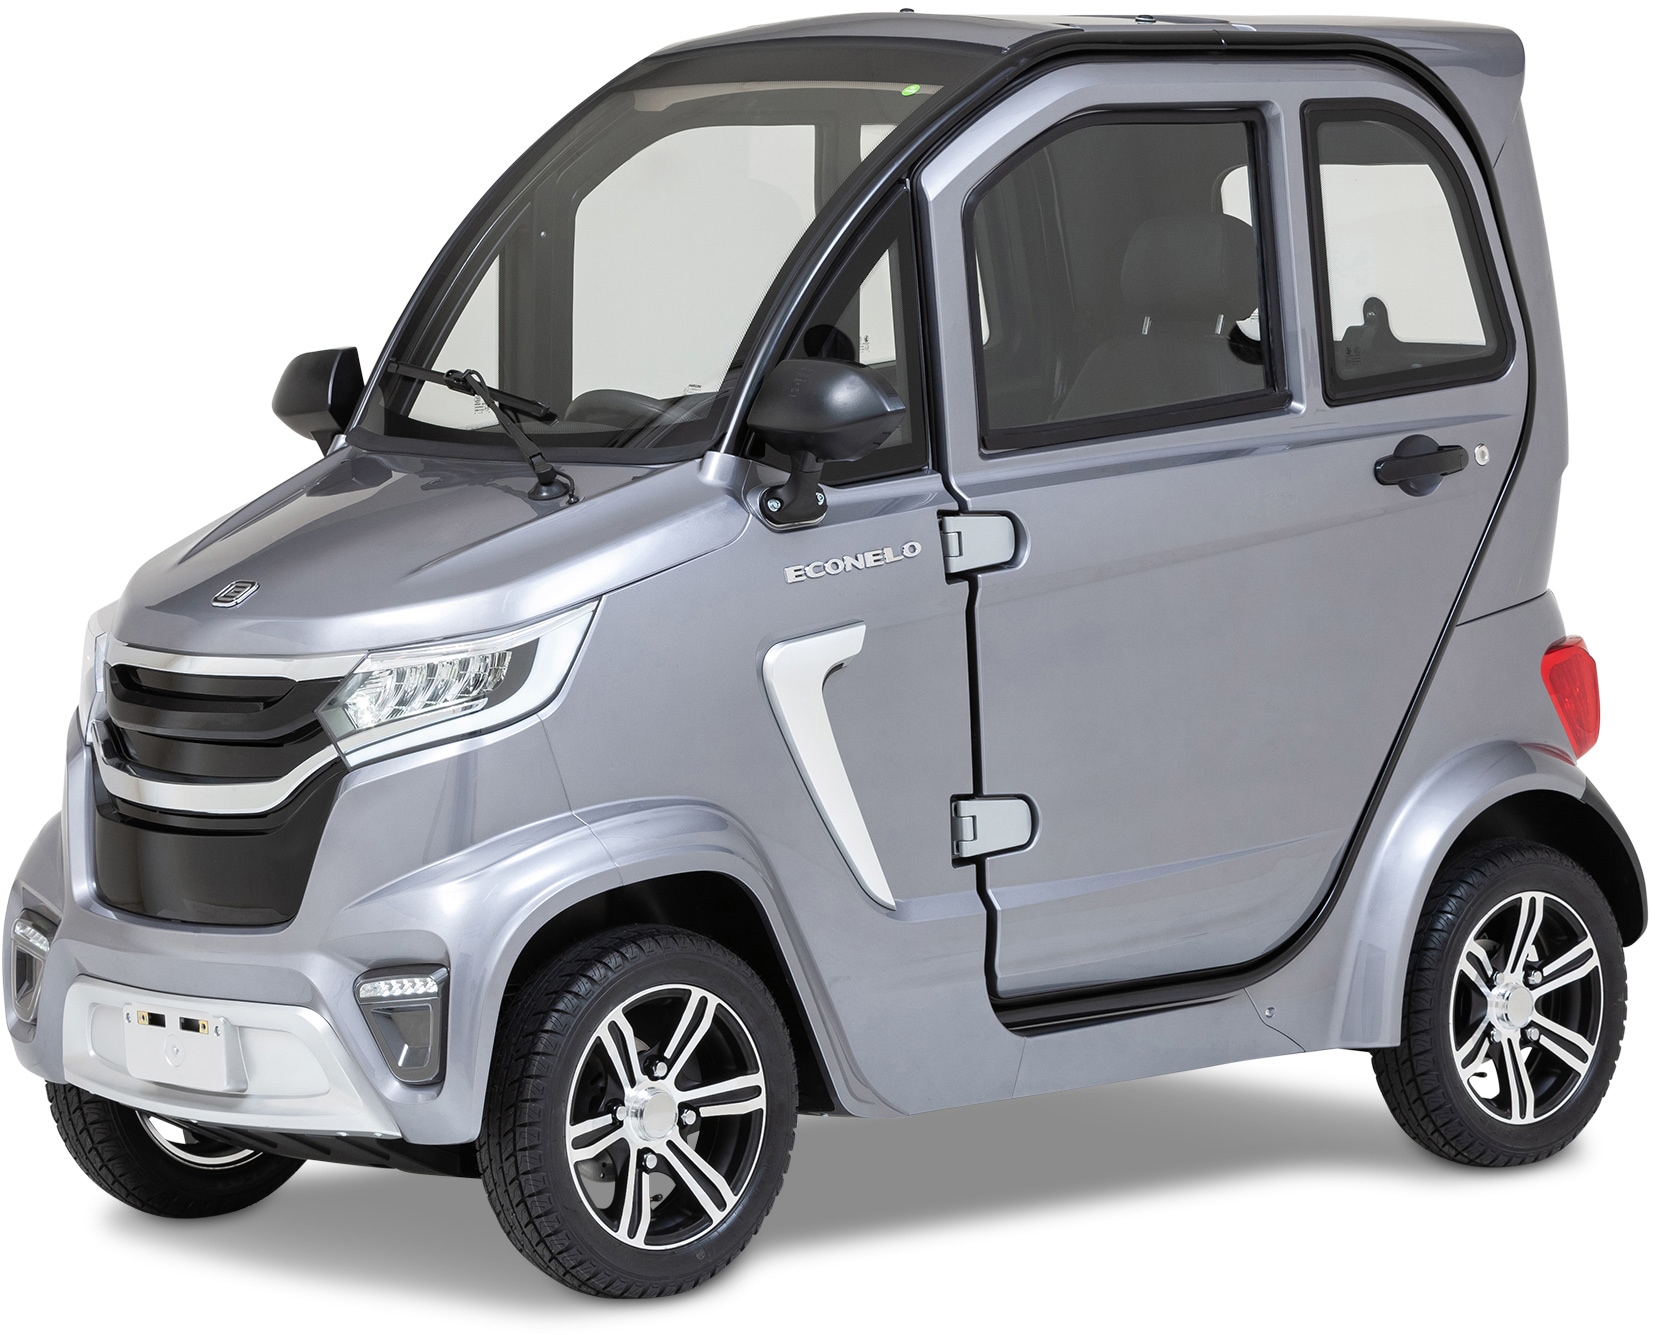 ECONELO Elektromobil »Seniorenmobil NELO 4.1«, 2200 W, 45 km/h, mit Rückfahrkamera